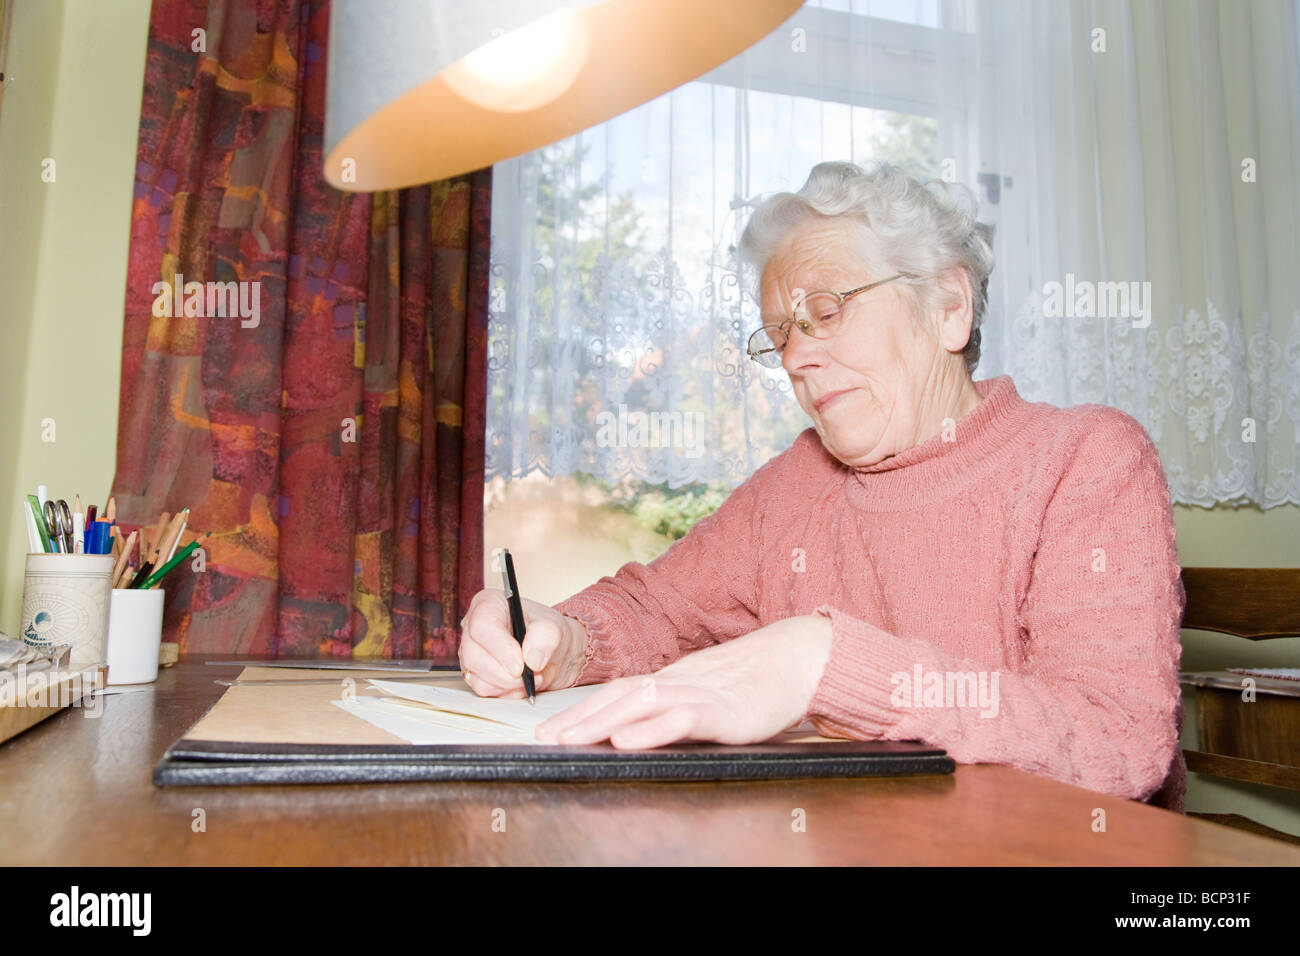 Frau in ihren Siebzigern sitzt am Schreibtisch und schreibt einen Brief Stock Photo